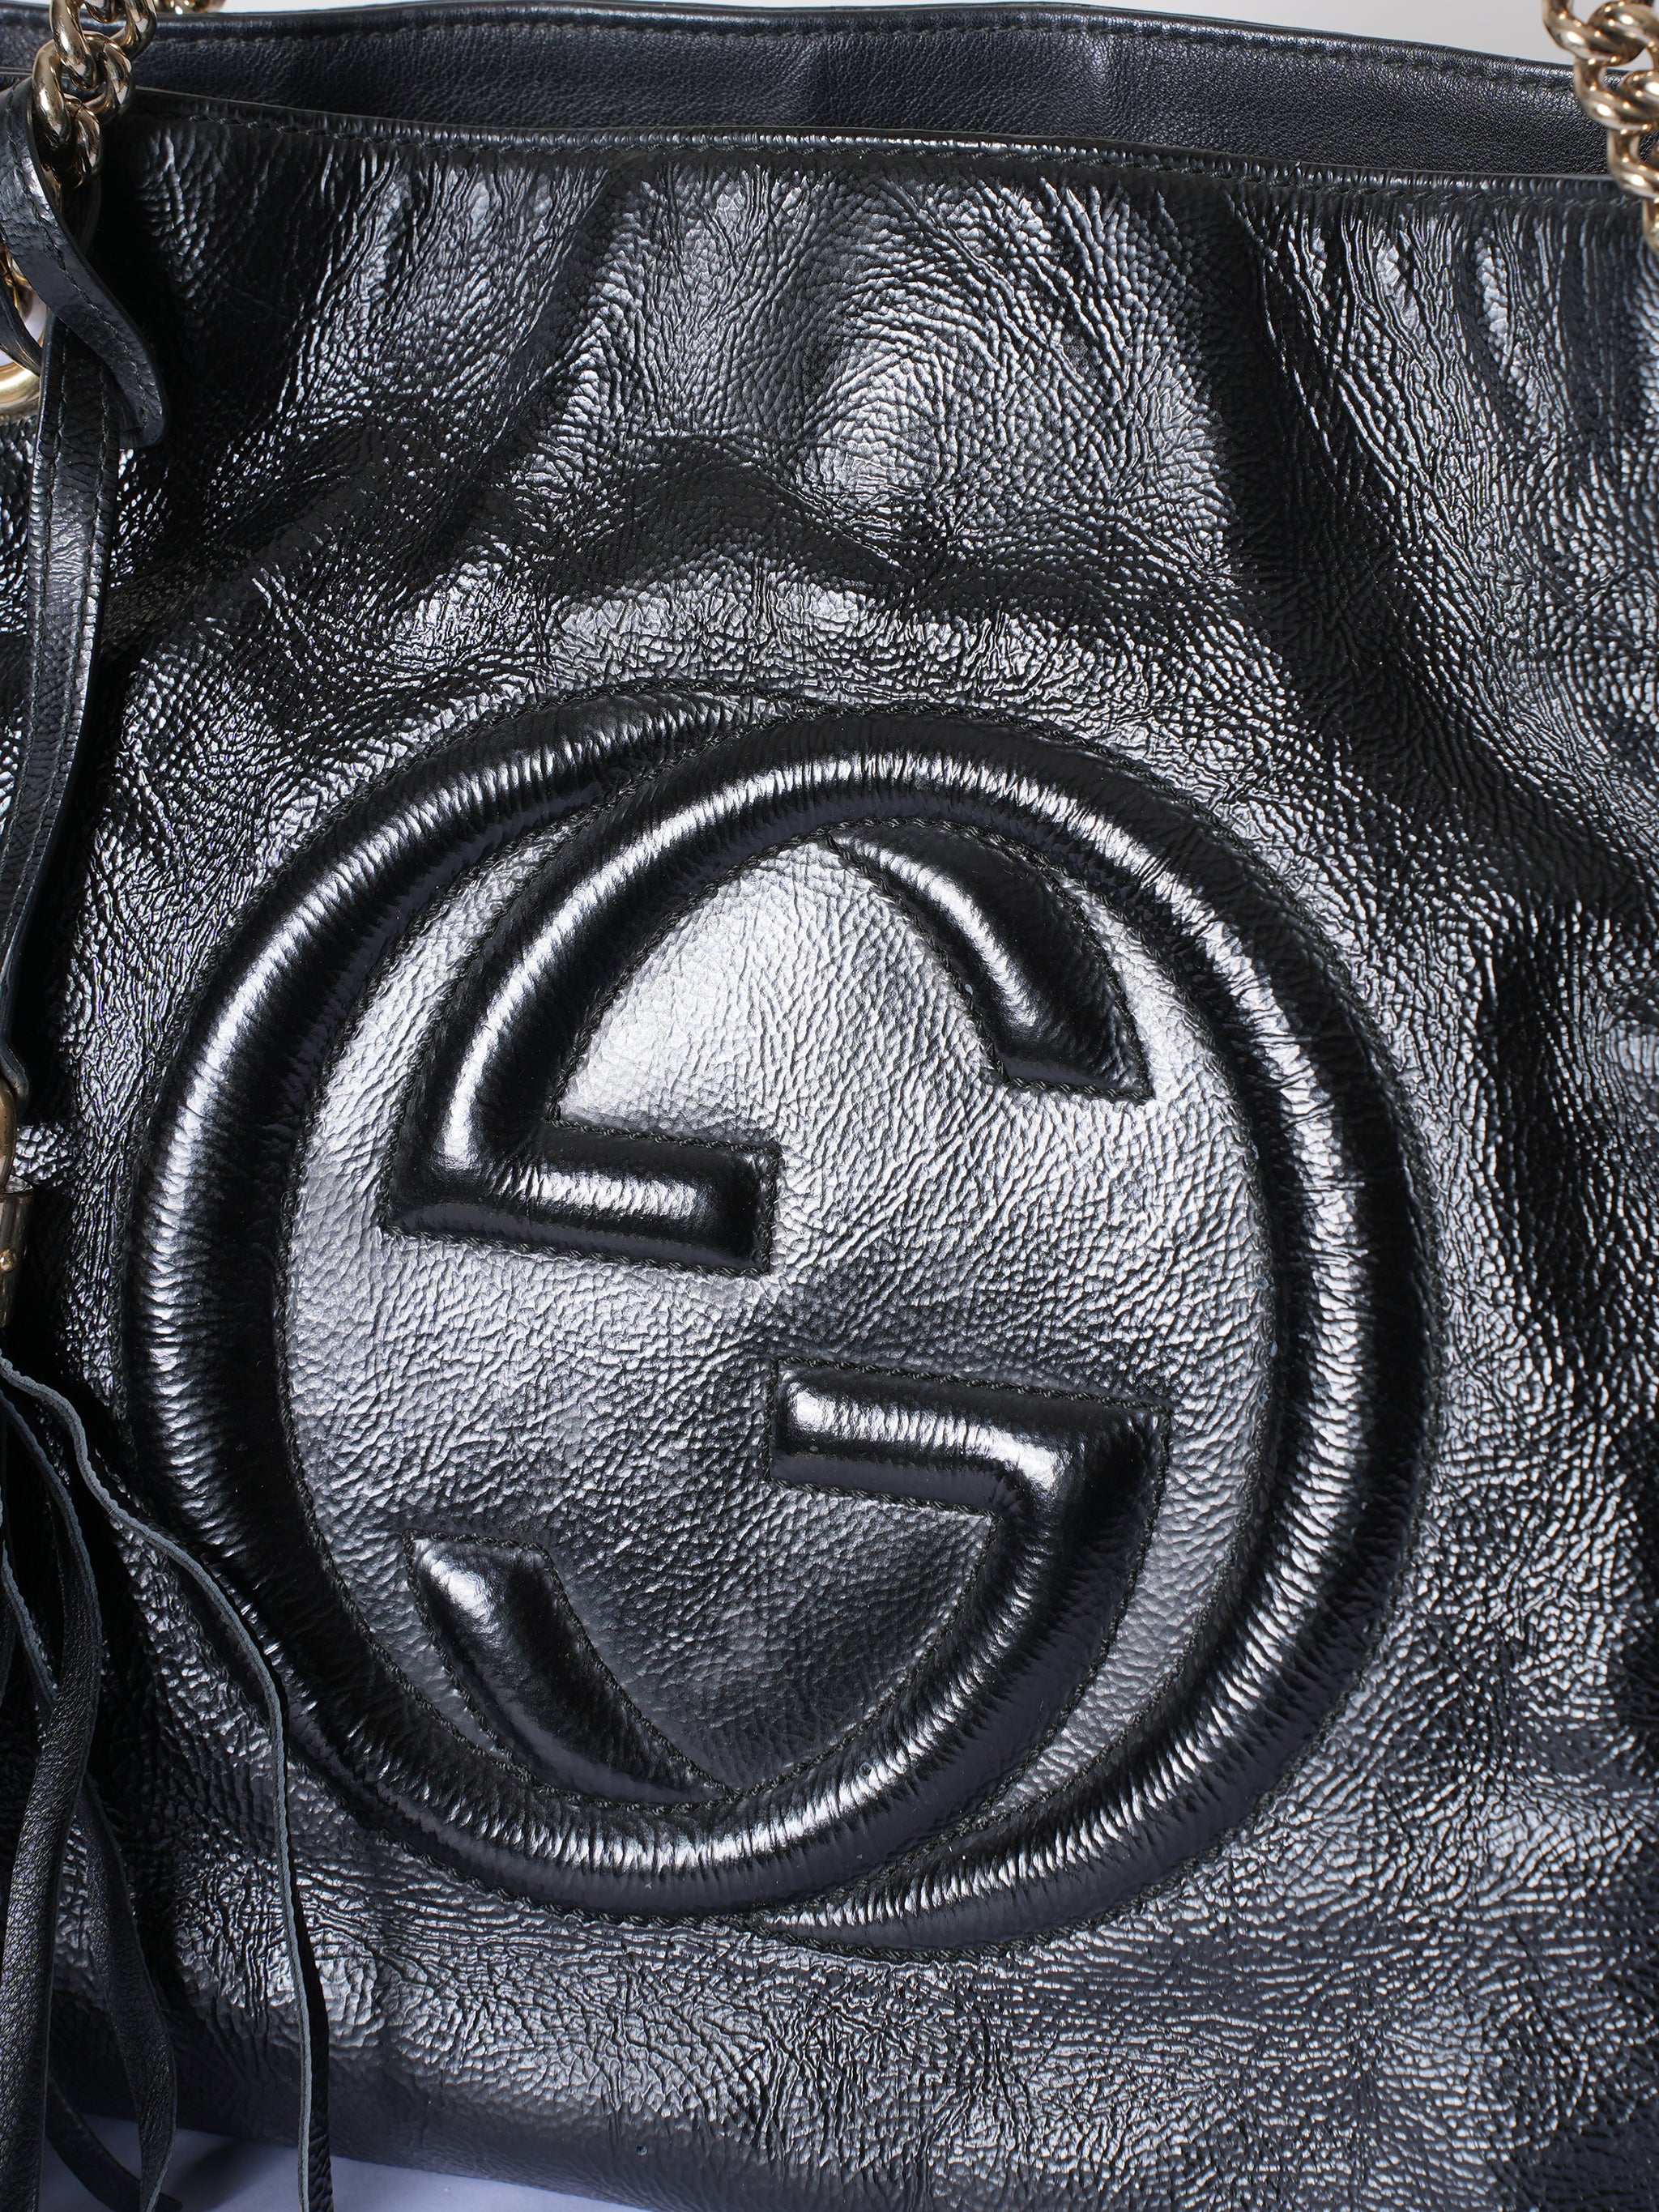 Gucci Soho Leather Black Shoulder Bag